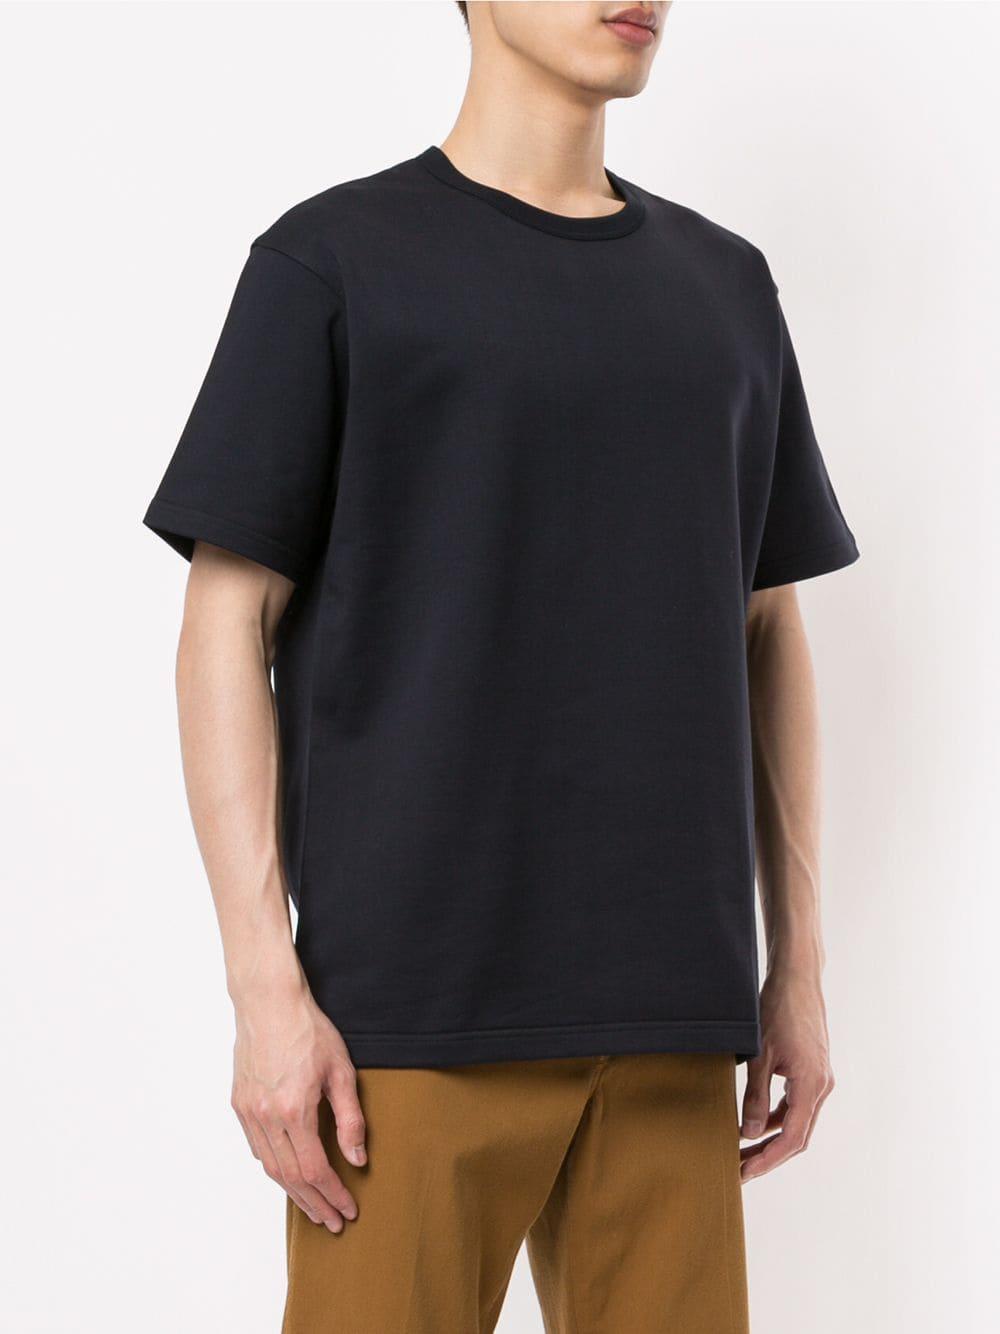 Kolor Dropped Shoulder T-shirt in Black for Men - Lyst